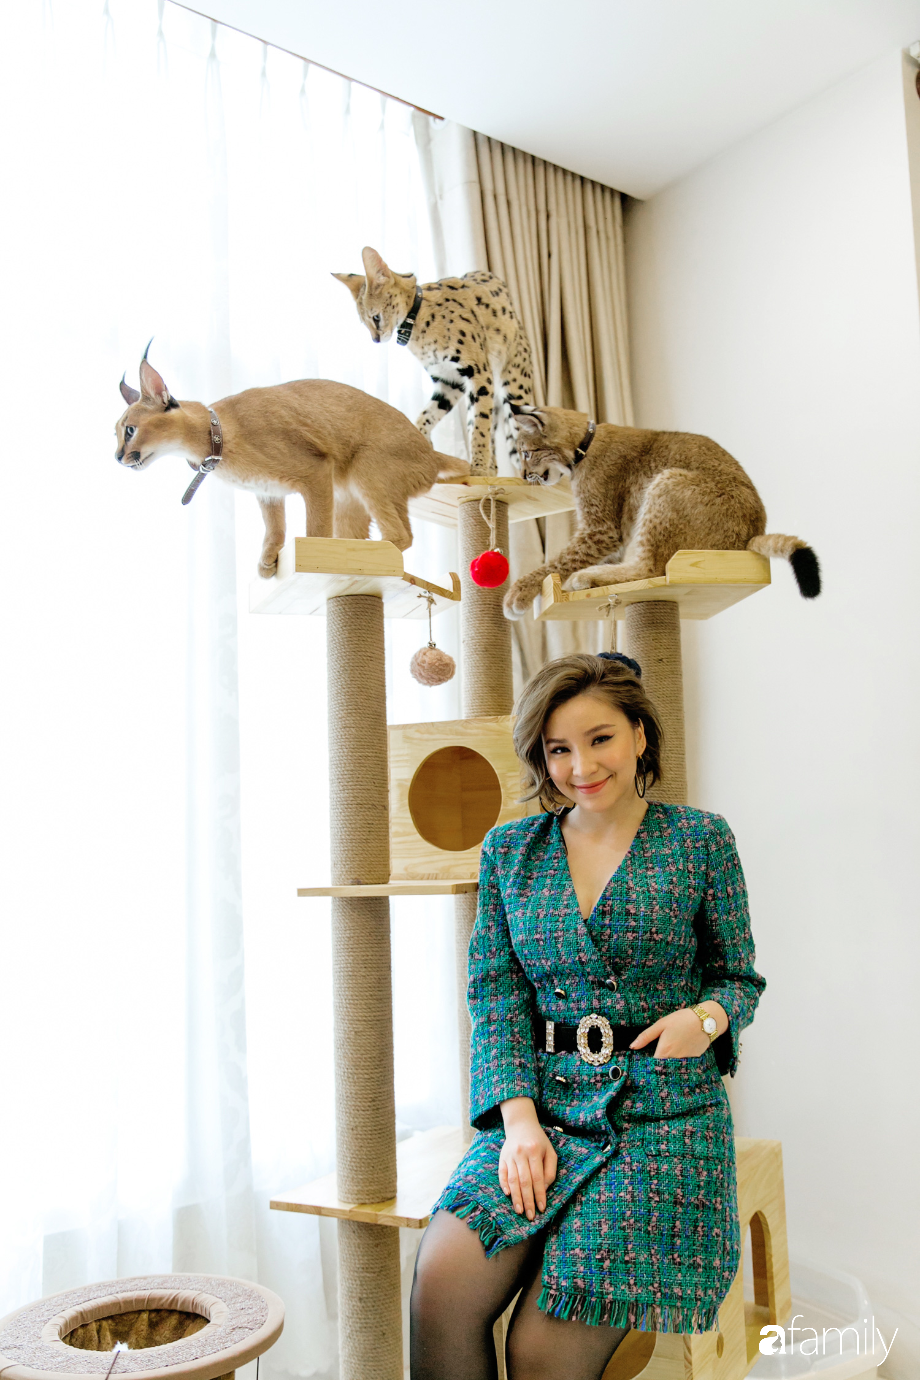 Trang Hà - Cô gái mang những chú mèo trị giá hàng tỷ đồng về Việt Nam và tiết lộ trào lưu nuôi thú cưng mới của giới đại gia và siêu giàu tại Sài Gòn - Ảnh 6.